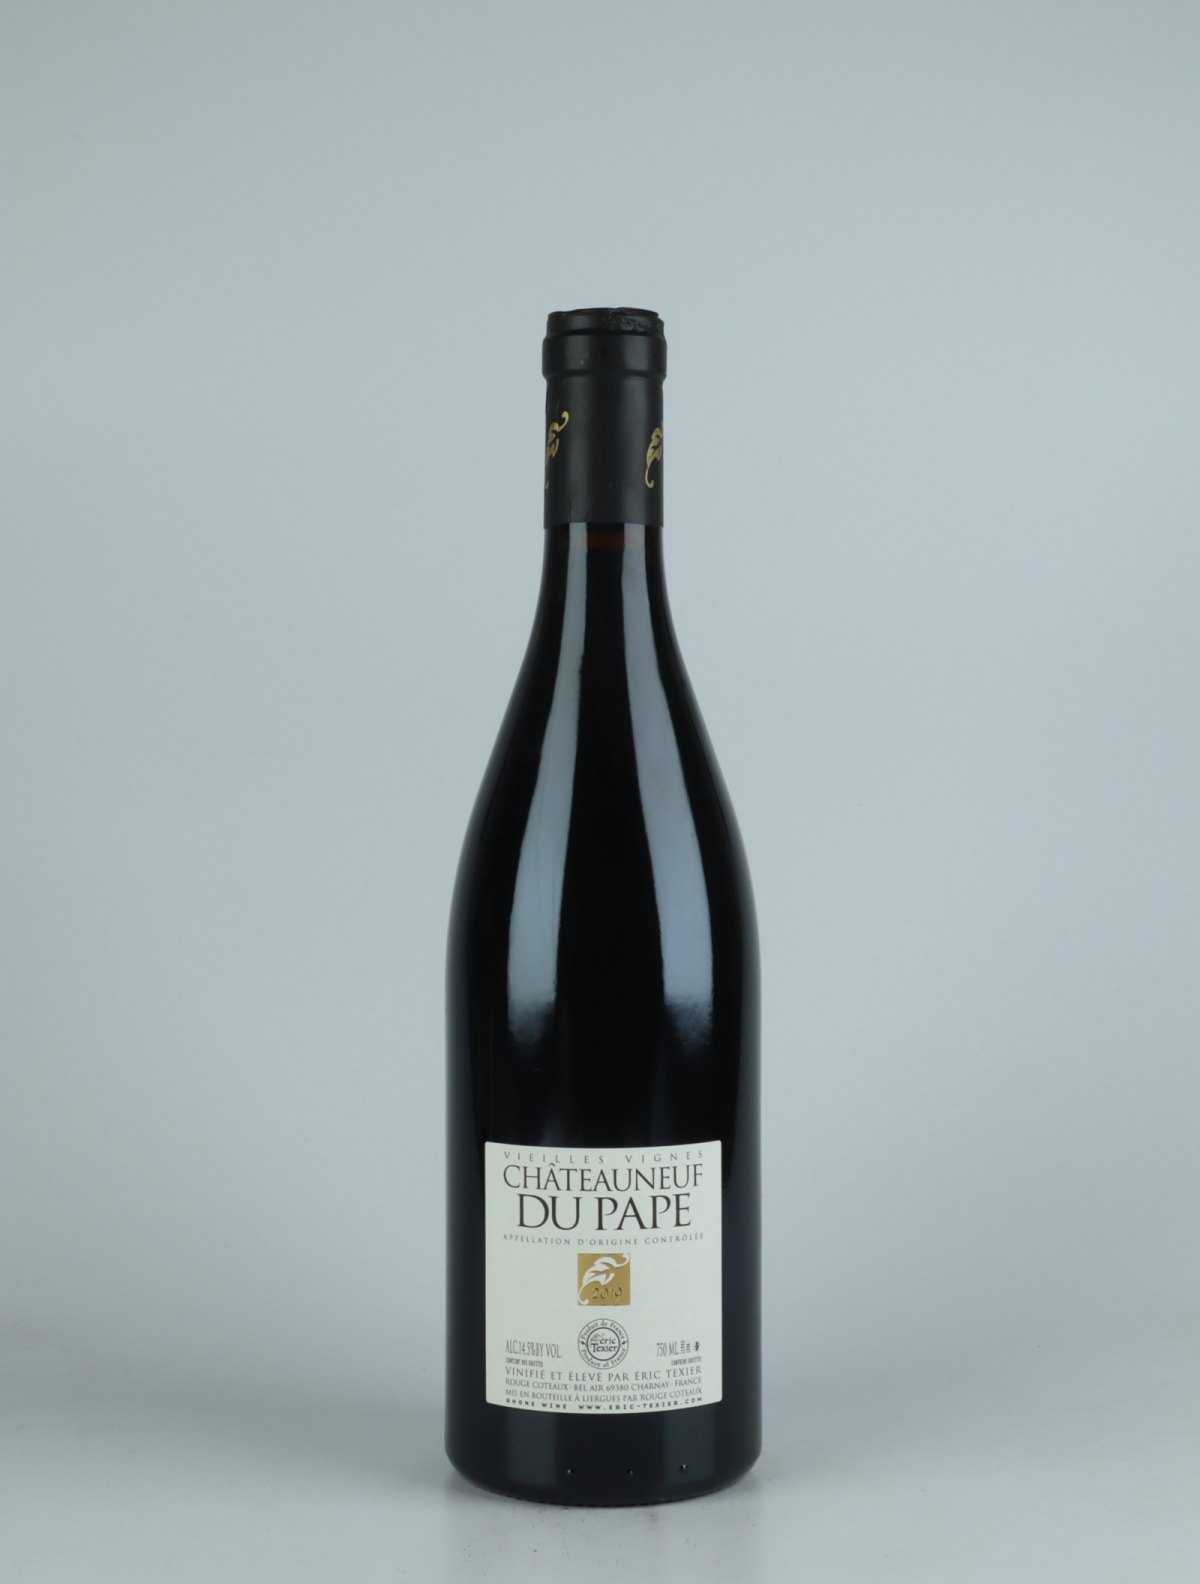 En flaske 2019 Châteauneuf-du-pape V.V. Rødvin fra Eric Texier, Rhône i Frankrig